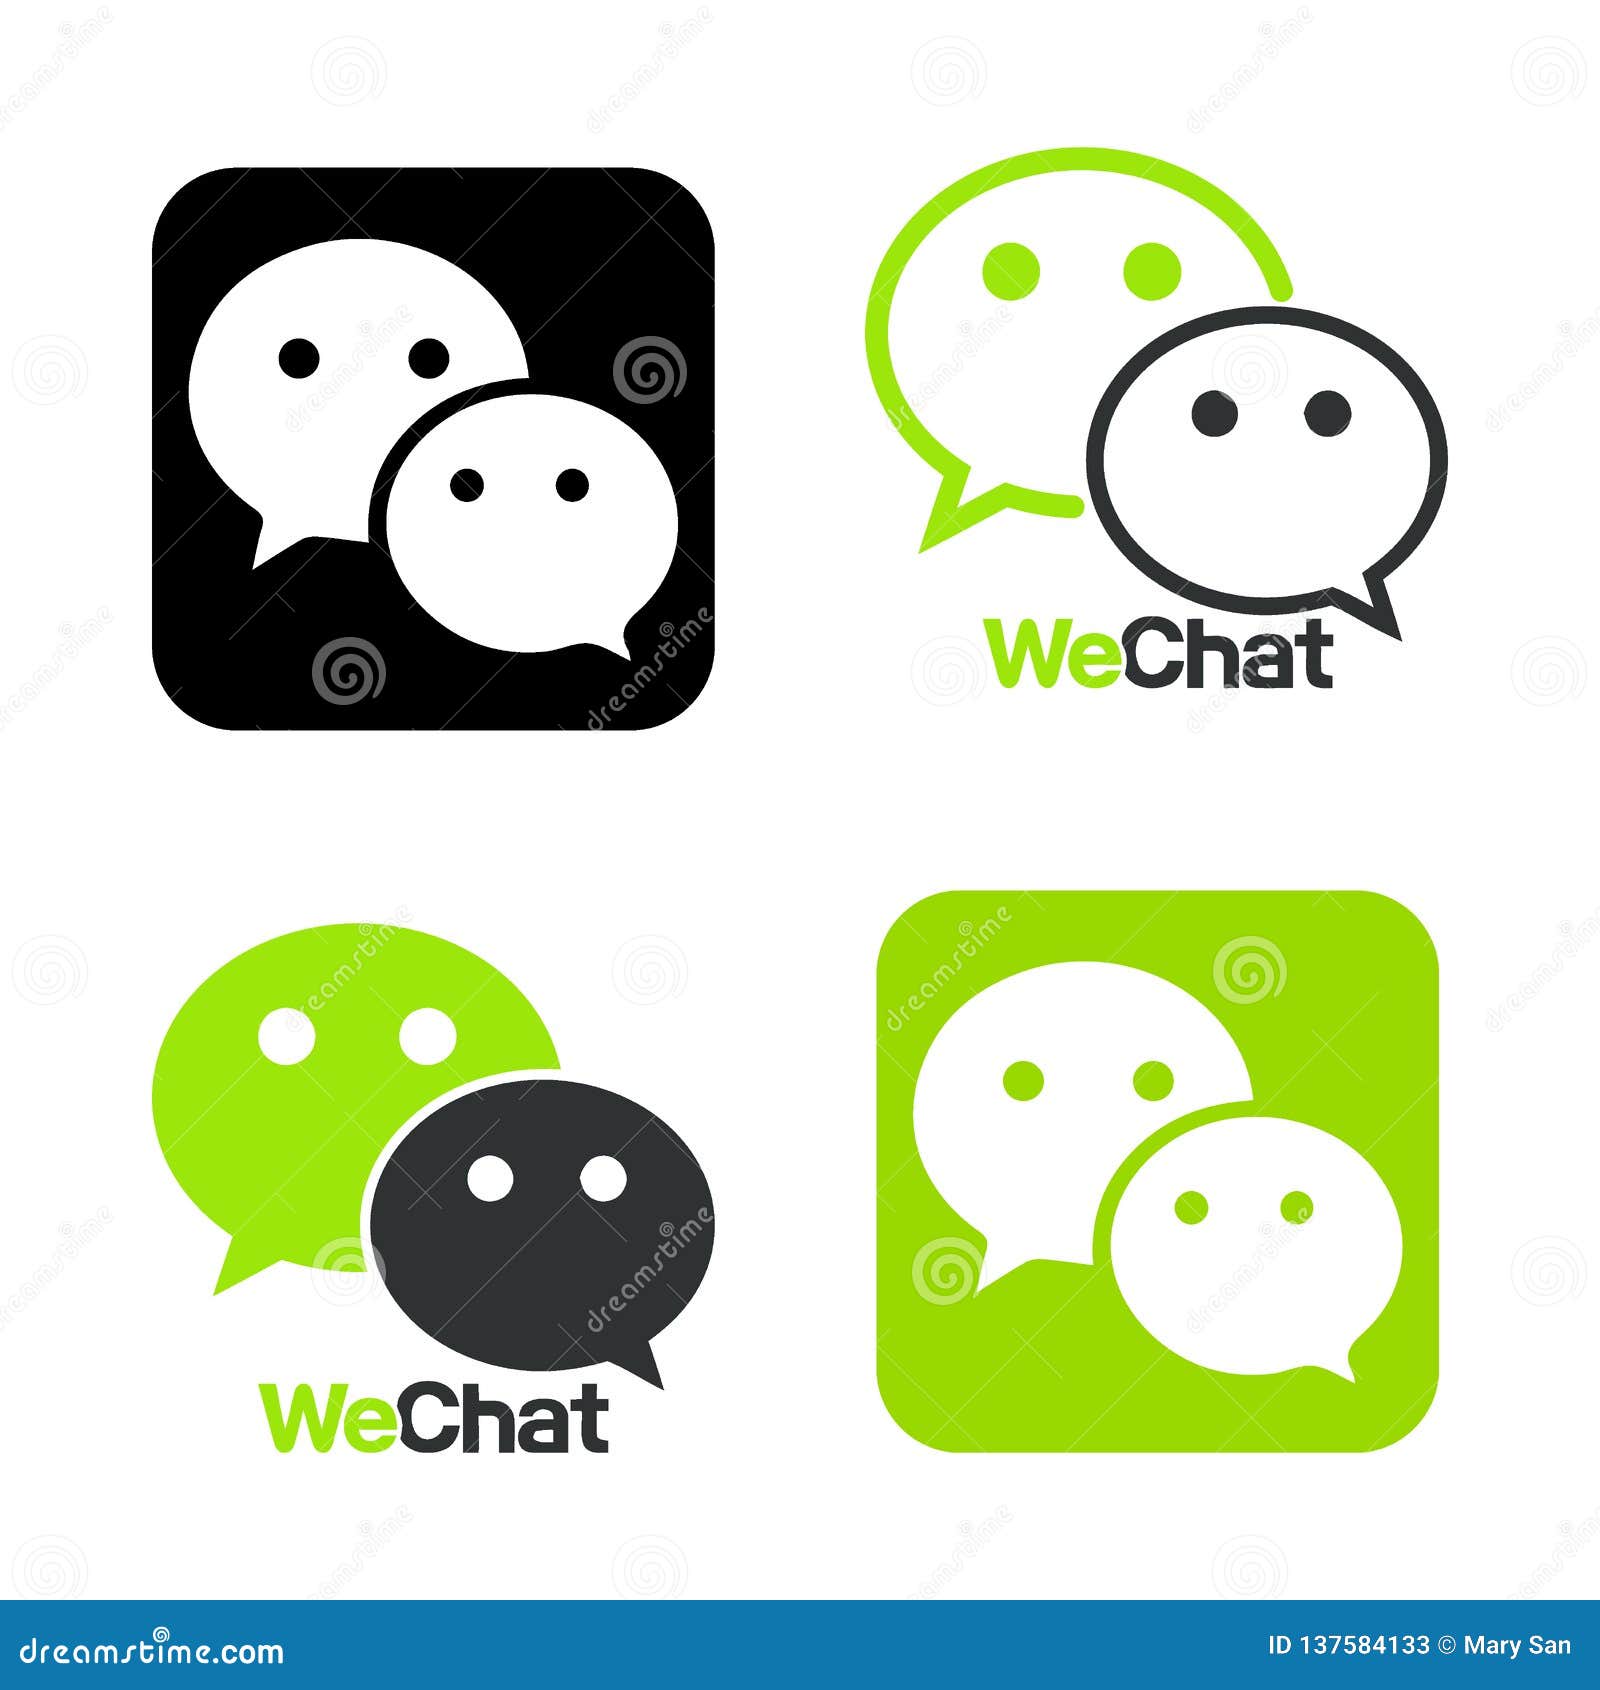 V chat messenger